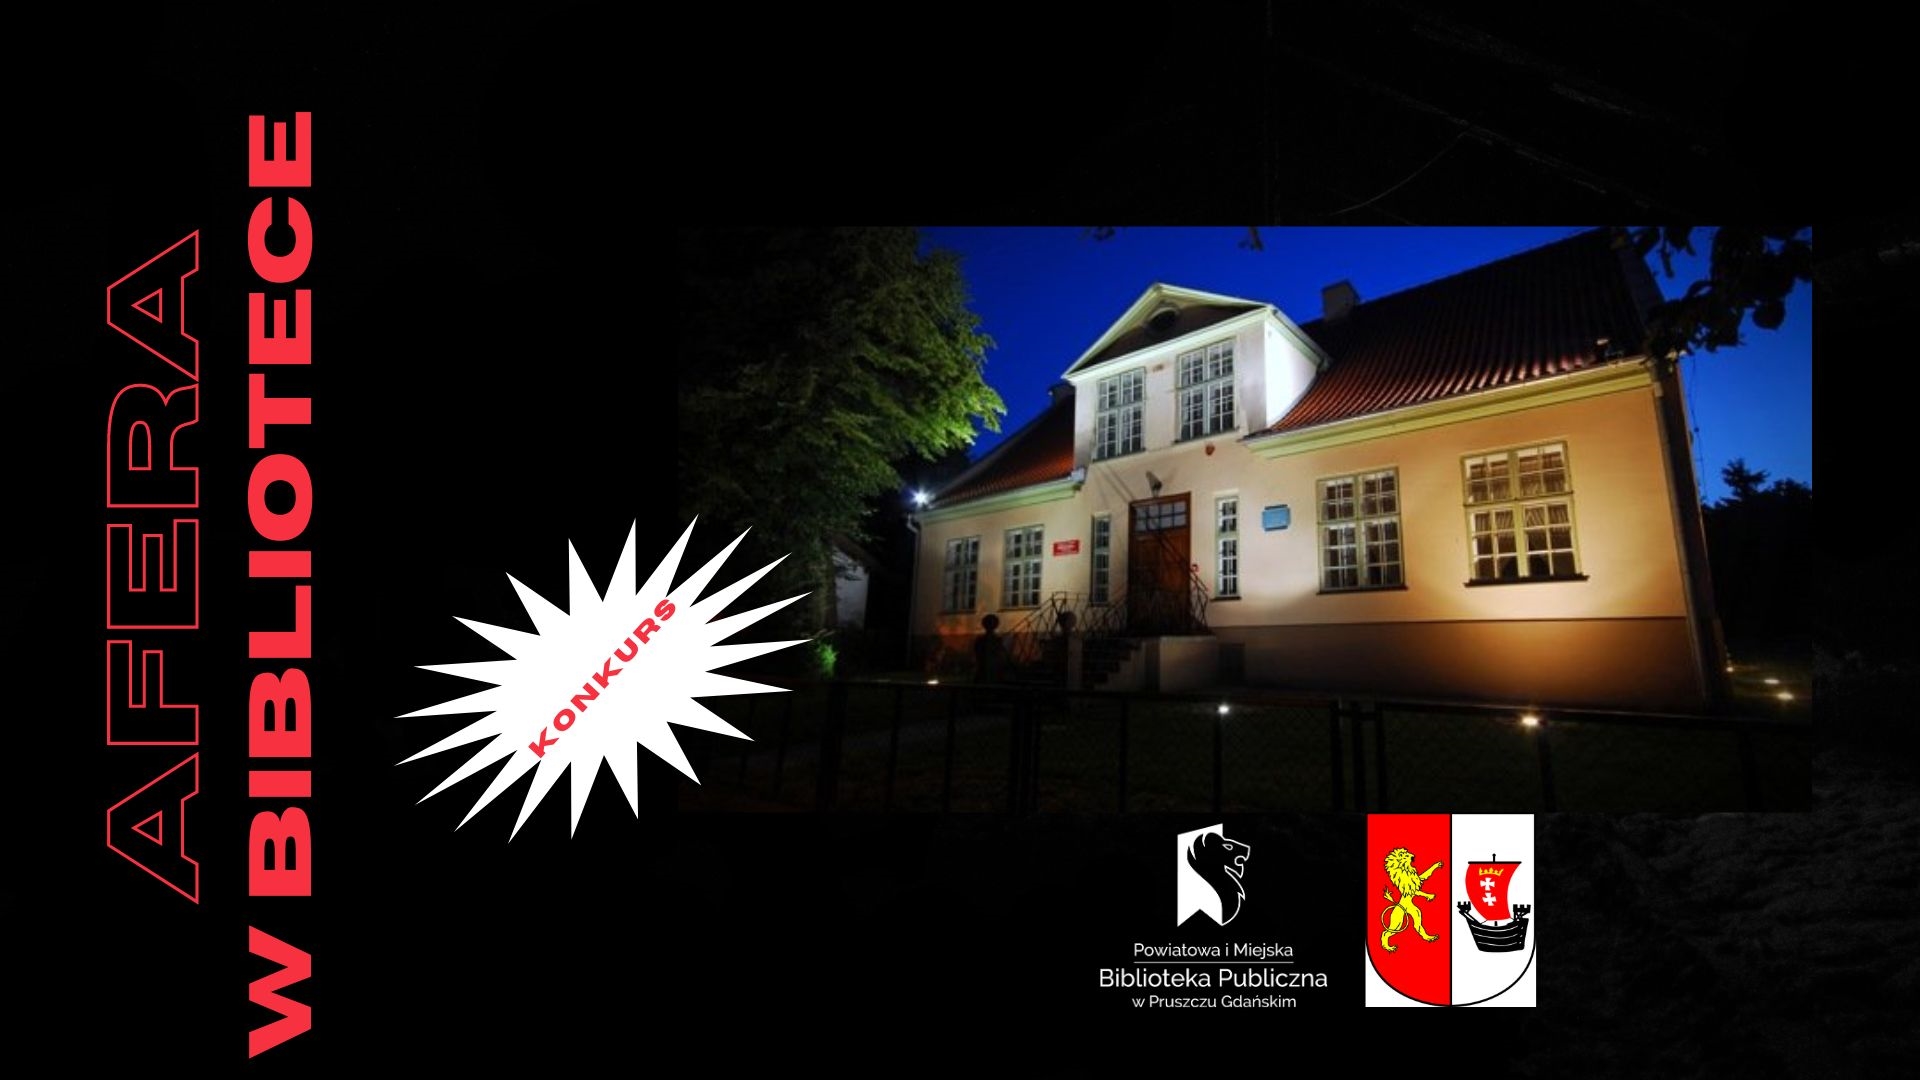 Budynek biblioteki nocą oraz napisy: Afera w bibliotece, konkurs oraz logotypy: biblioteki i starostwa w Pruszczu Gdańskim.